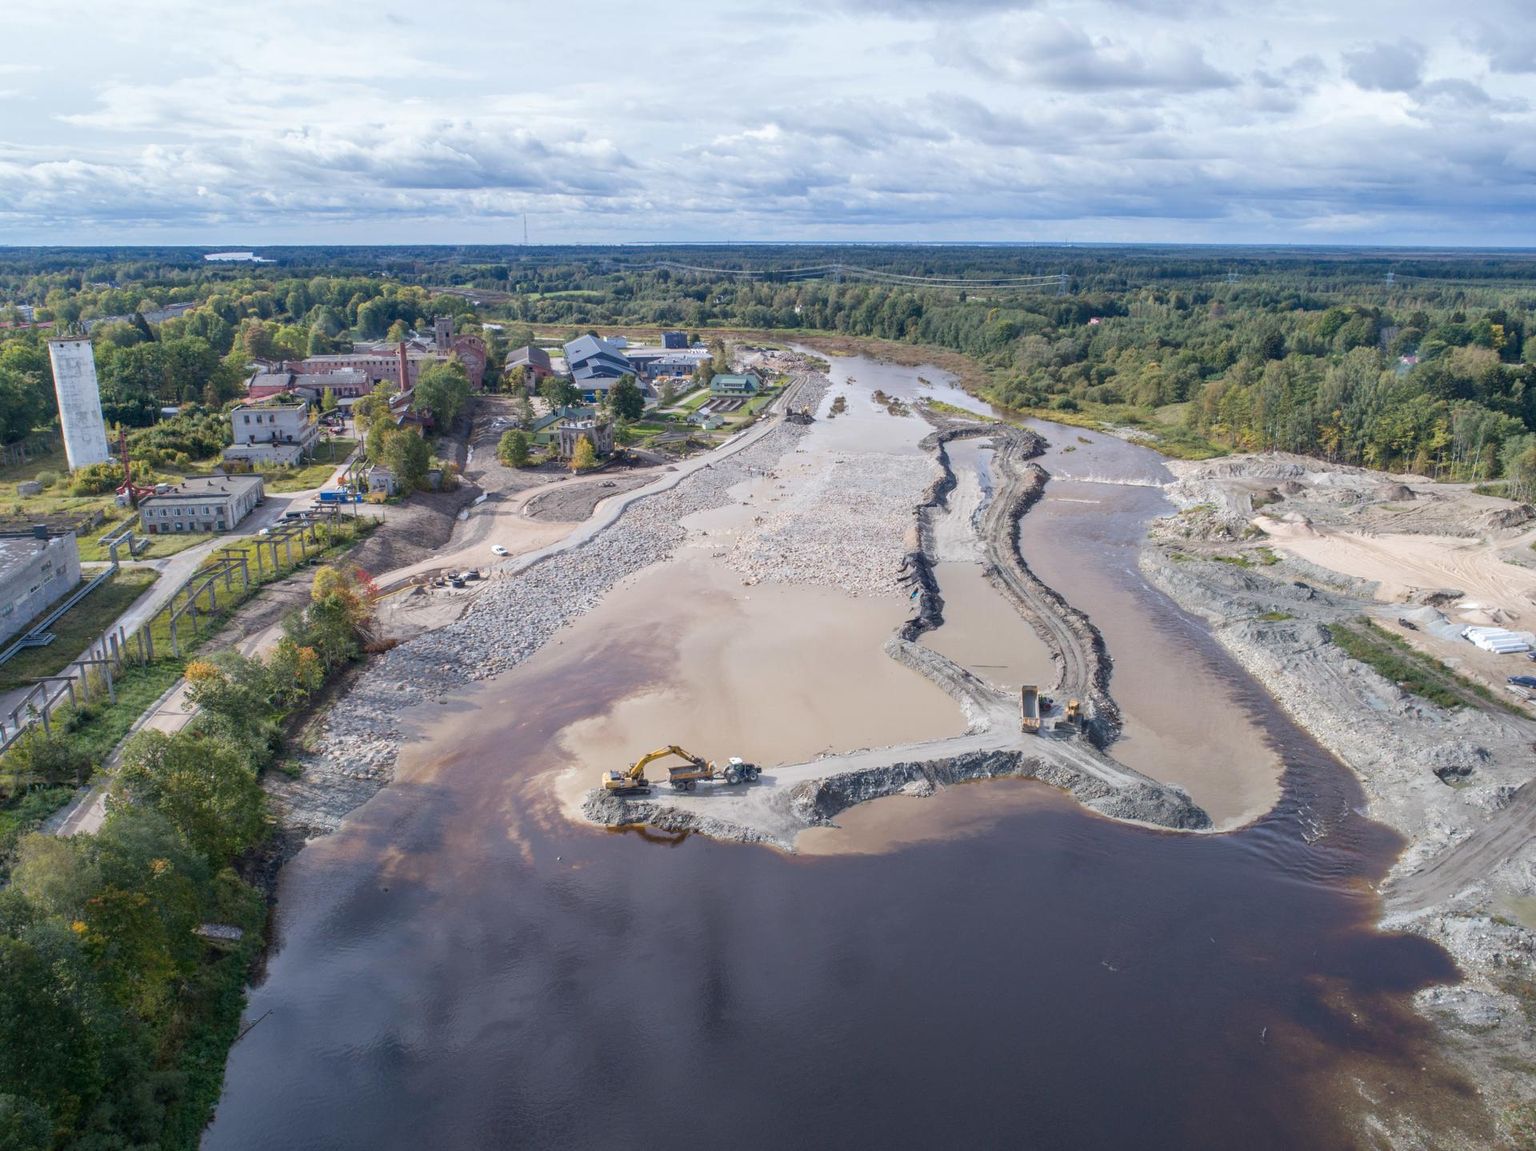 Tori vallas otsitakse ideid, kuidas Pärnu jõel Sindi paisu asemel rajatud kärestikku aktiivsemalt kasutusele võtta ja tagada ligipääs ka linna keskelt.